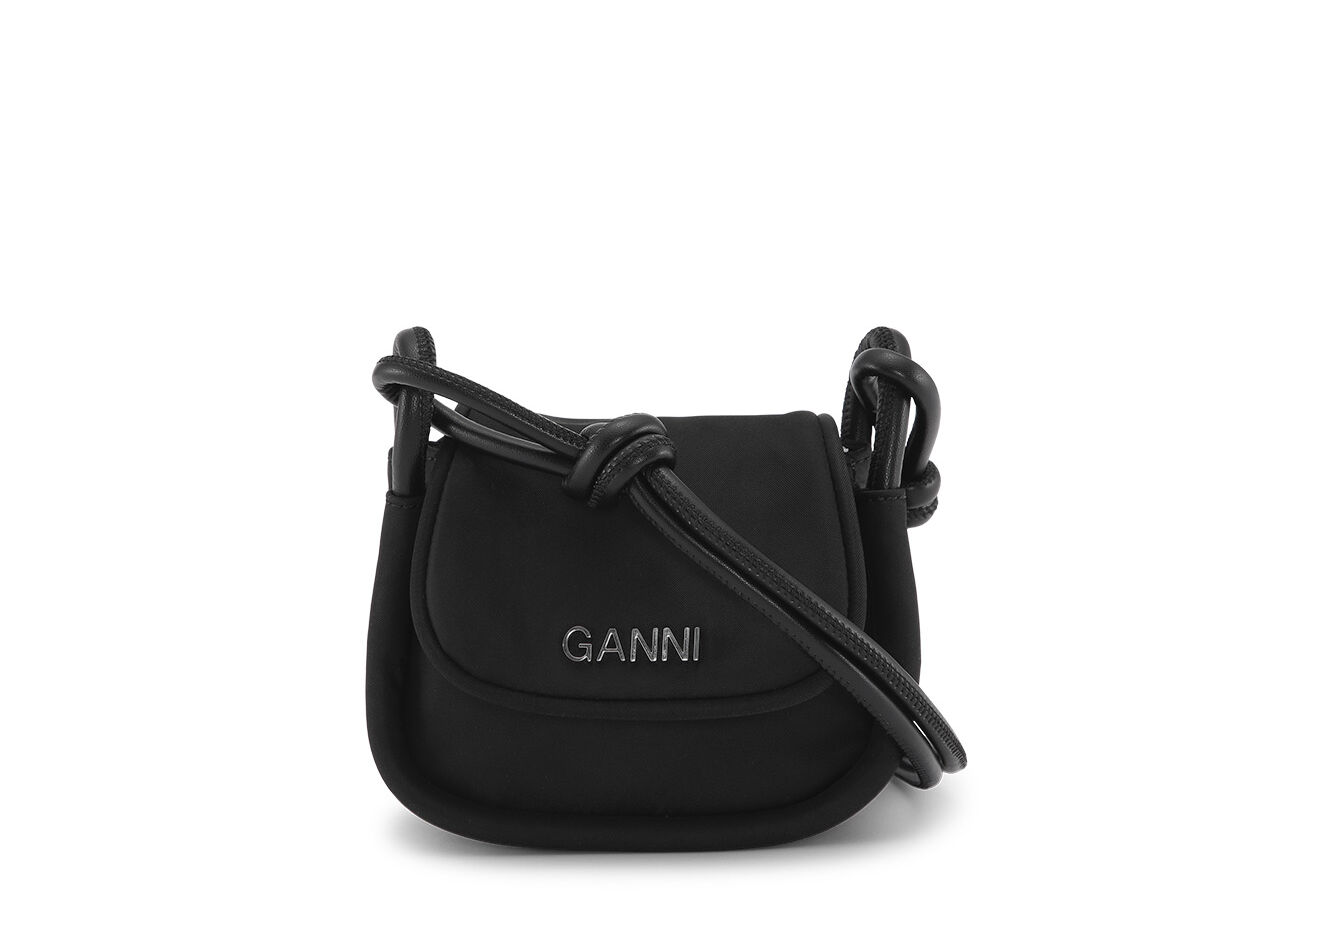 Black Knot Mini Flap Over Bag, Nylon, in colour Black - 1 - GANNI